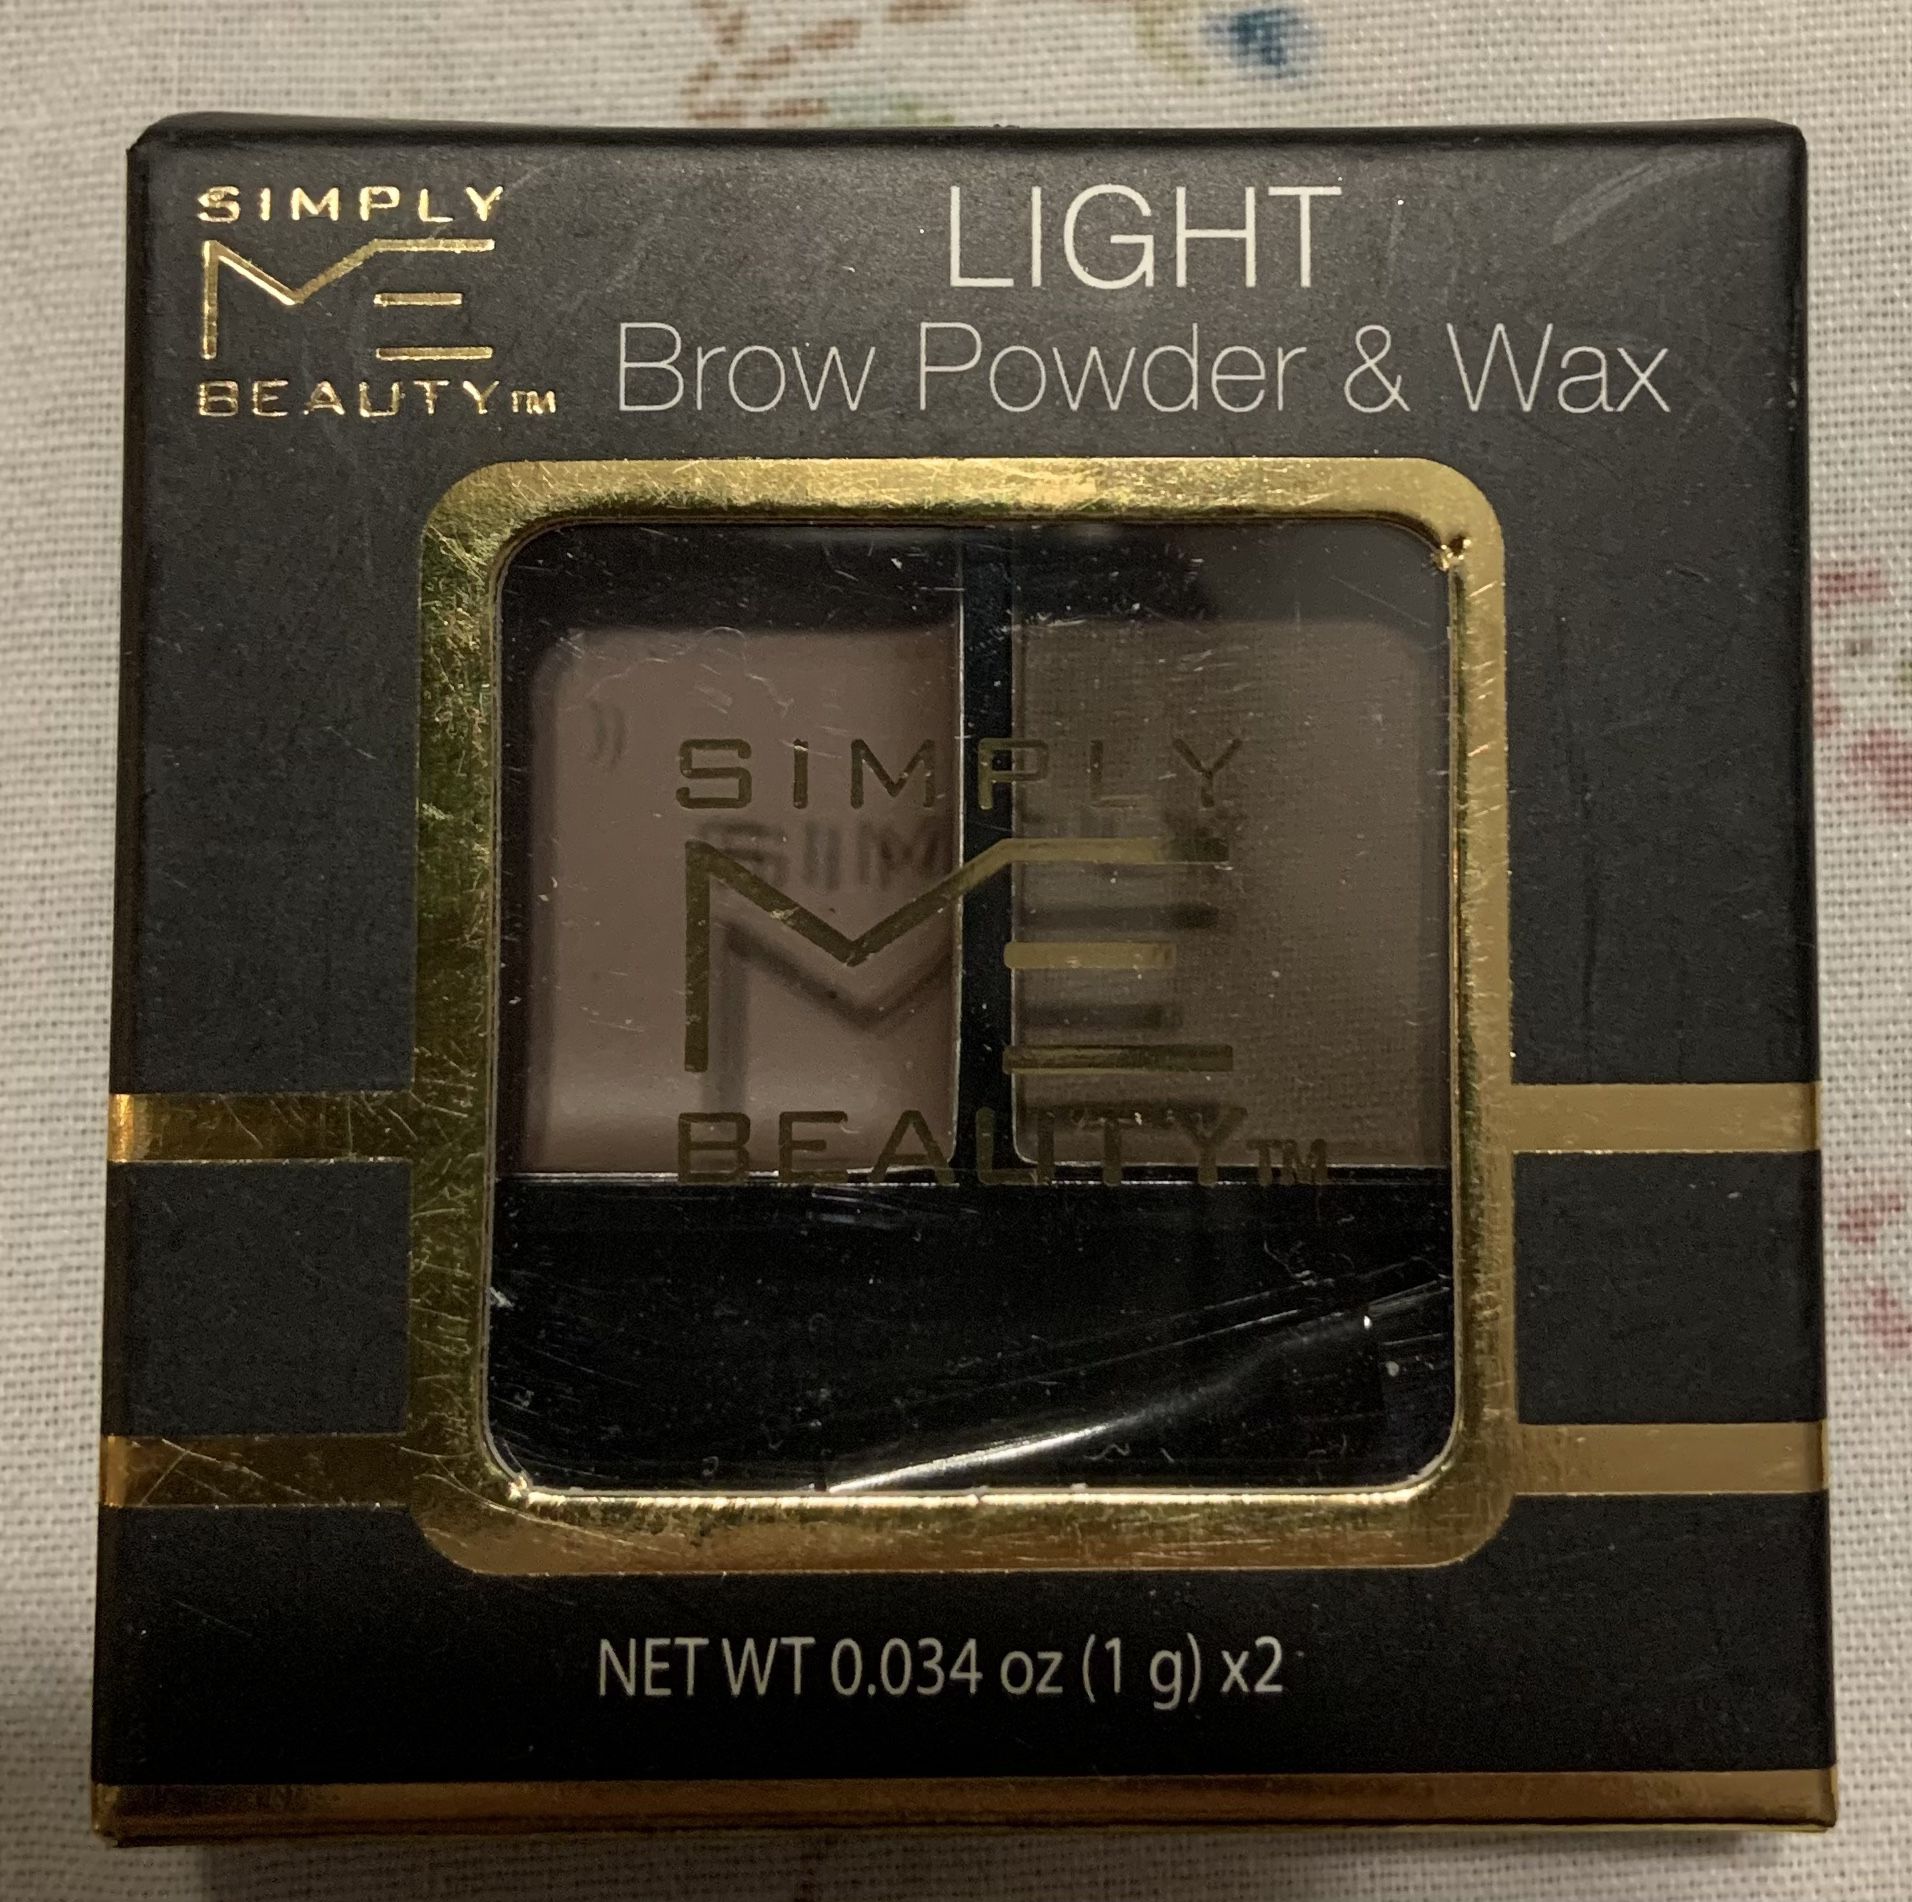 Brow Powder & Wax, $4 Each 